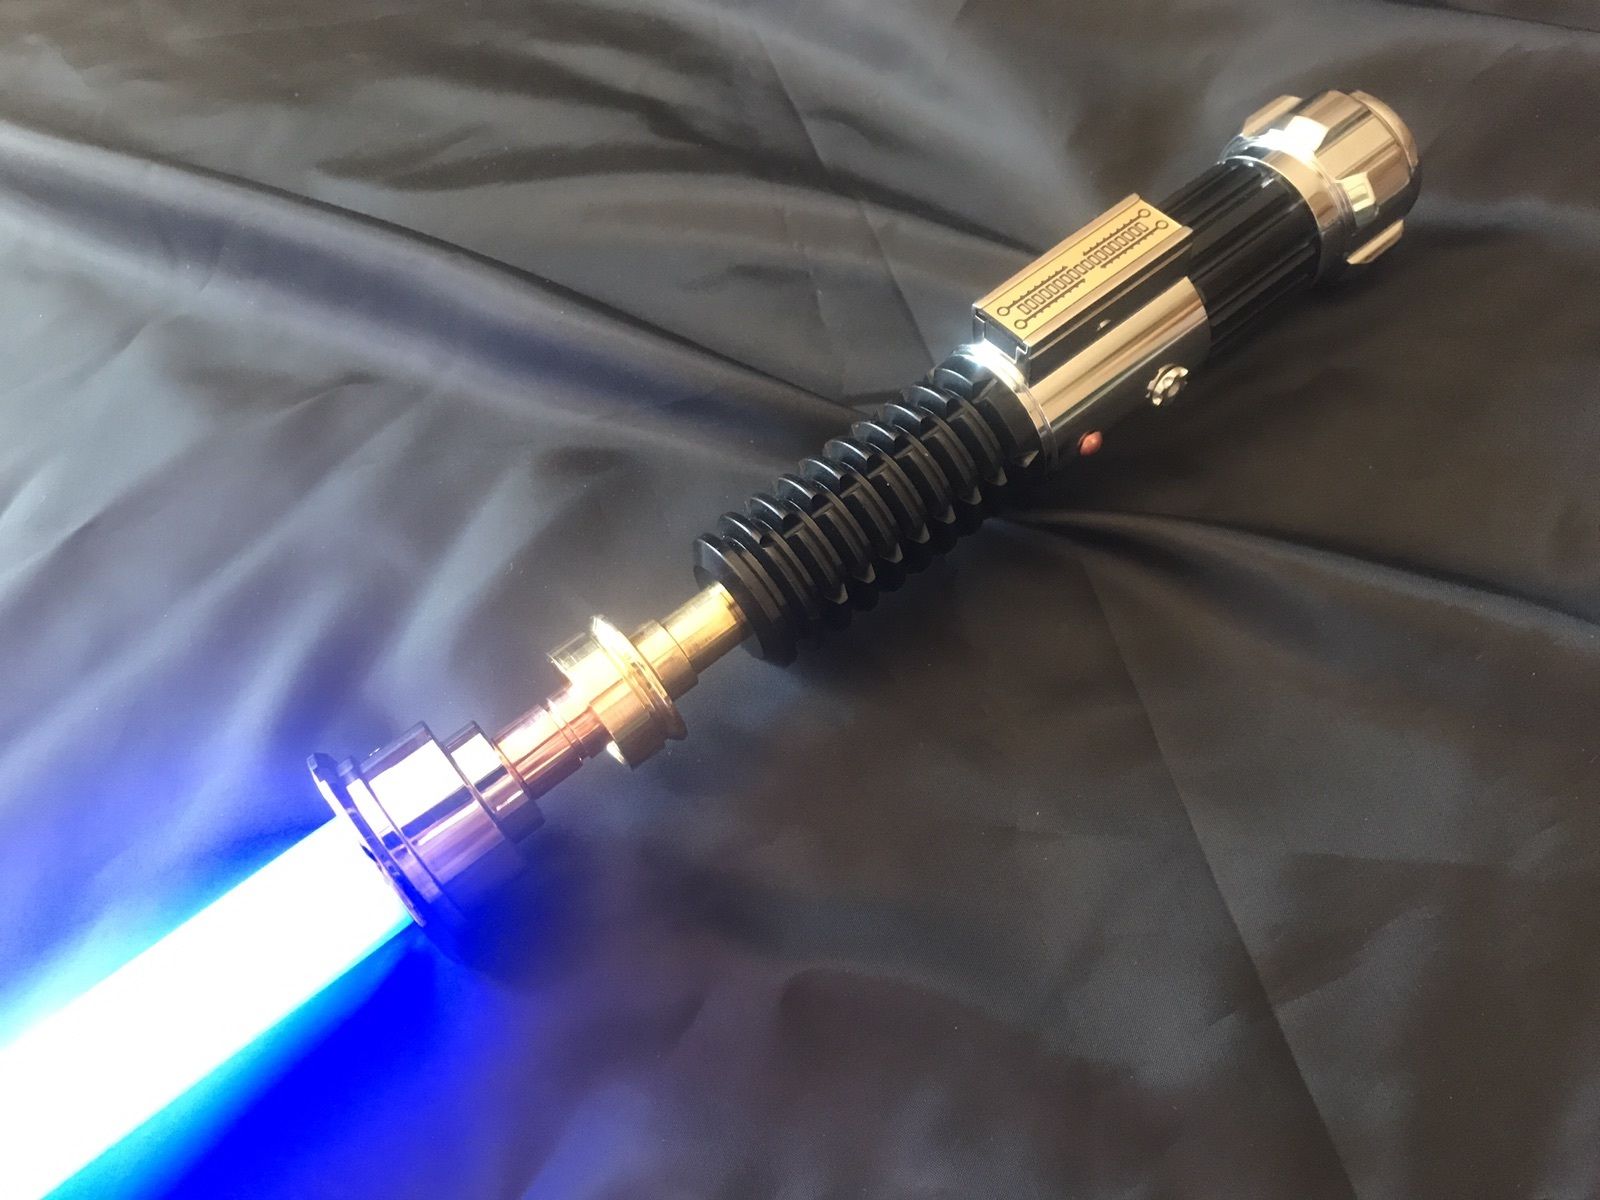 Star Wars : Les plus beaux sabres laser vendus sur eBay